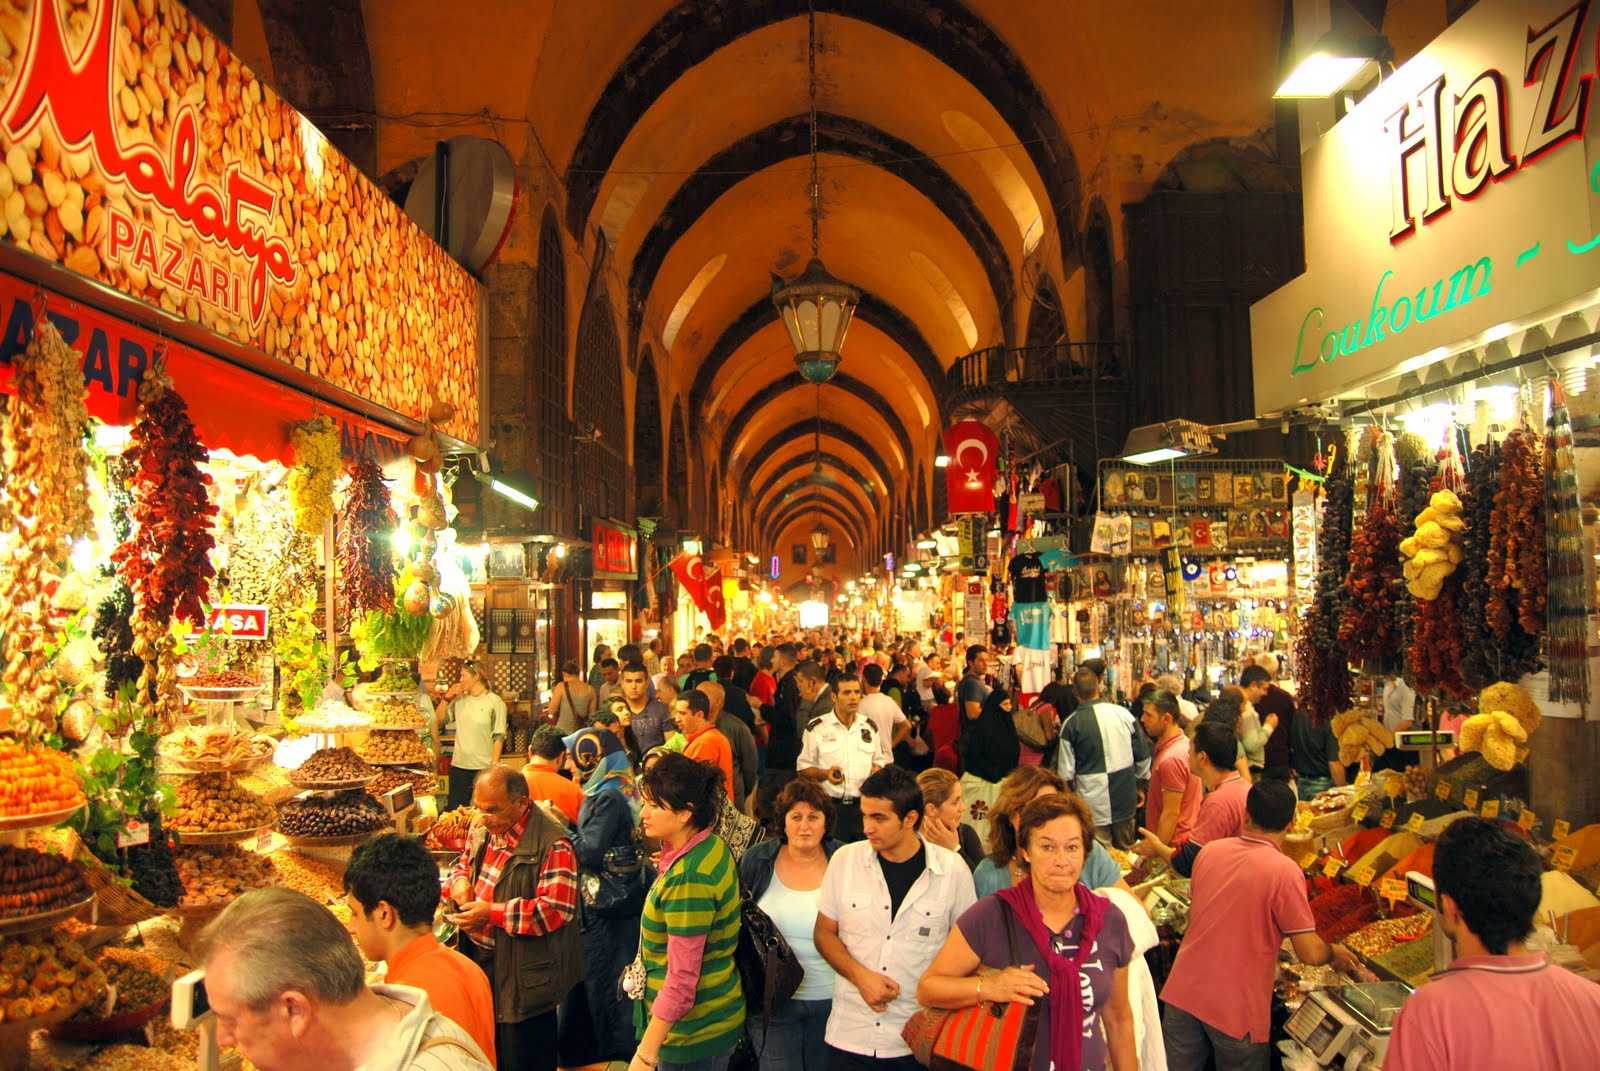 Шоппинг в Турции. Самые лучшие базары и магазины